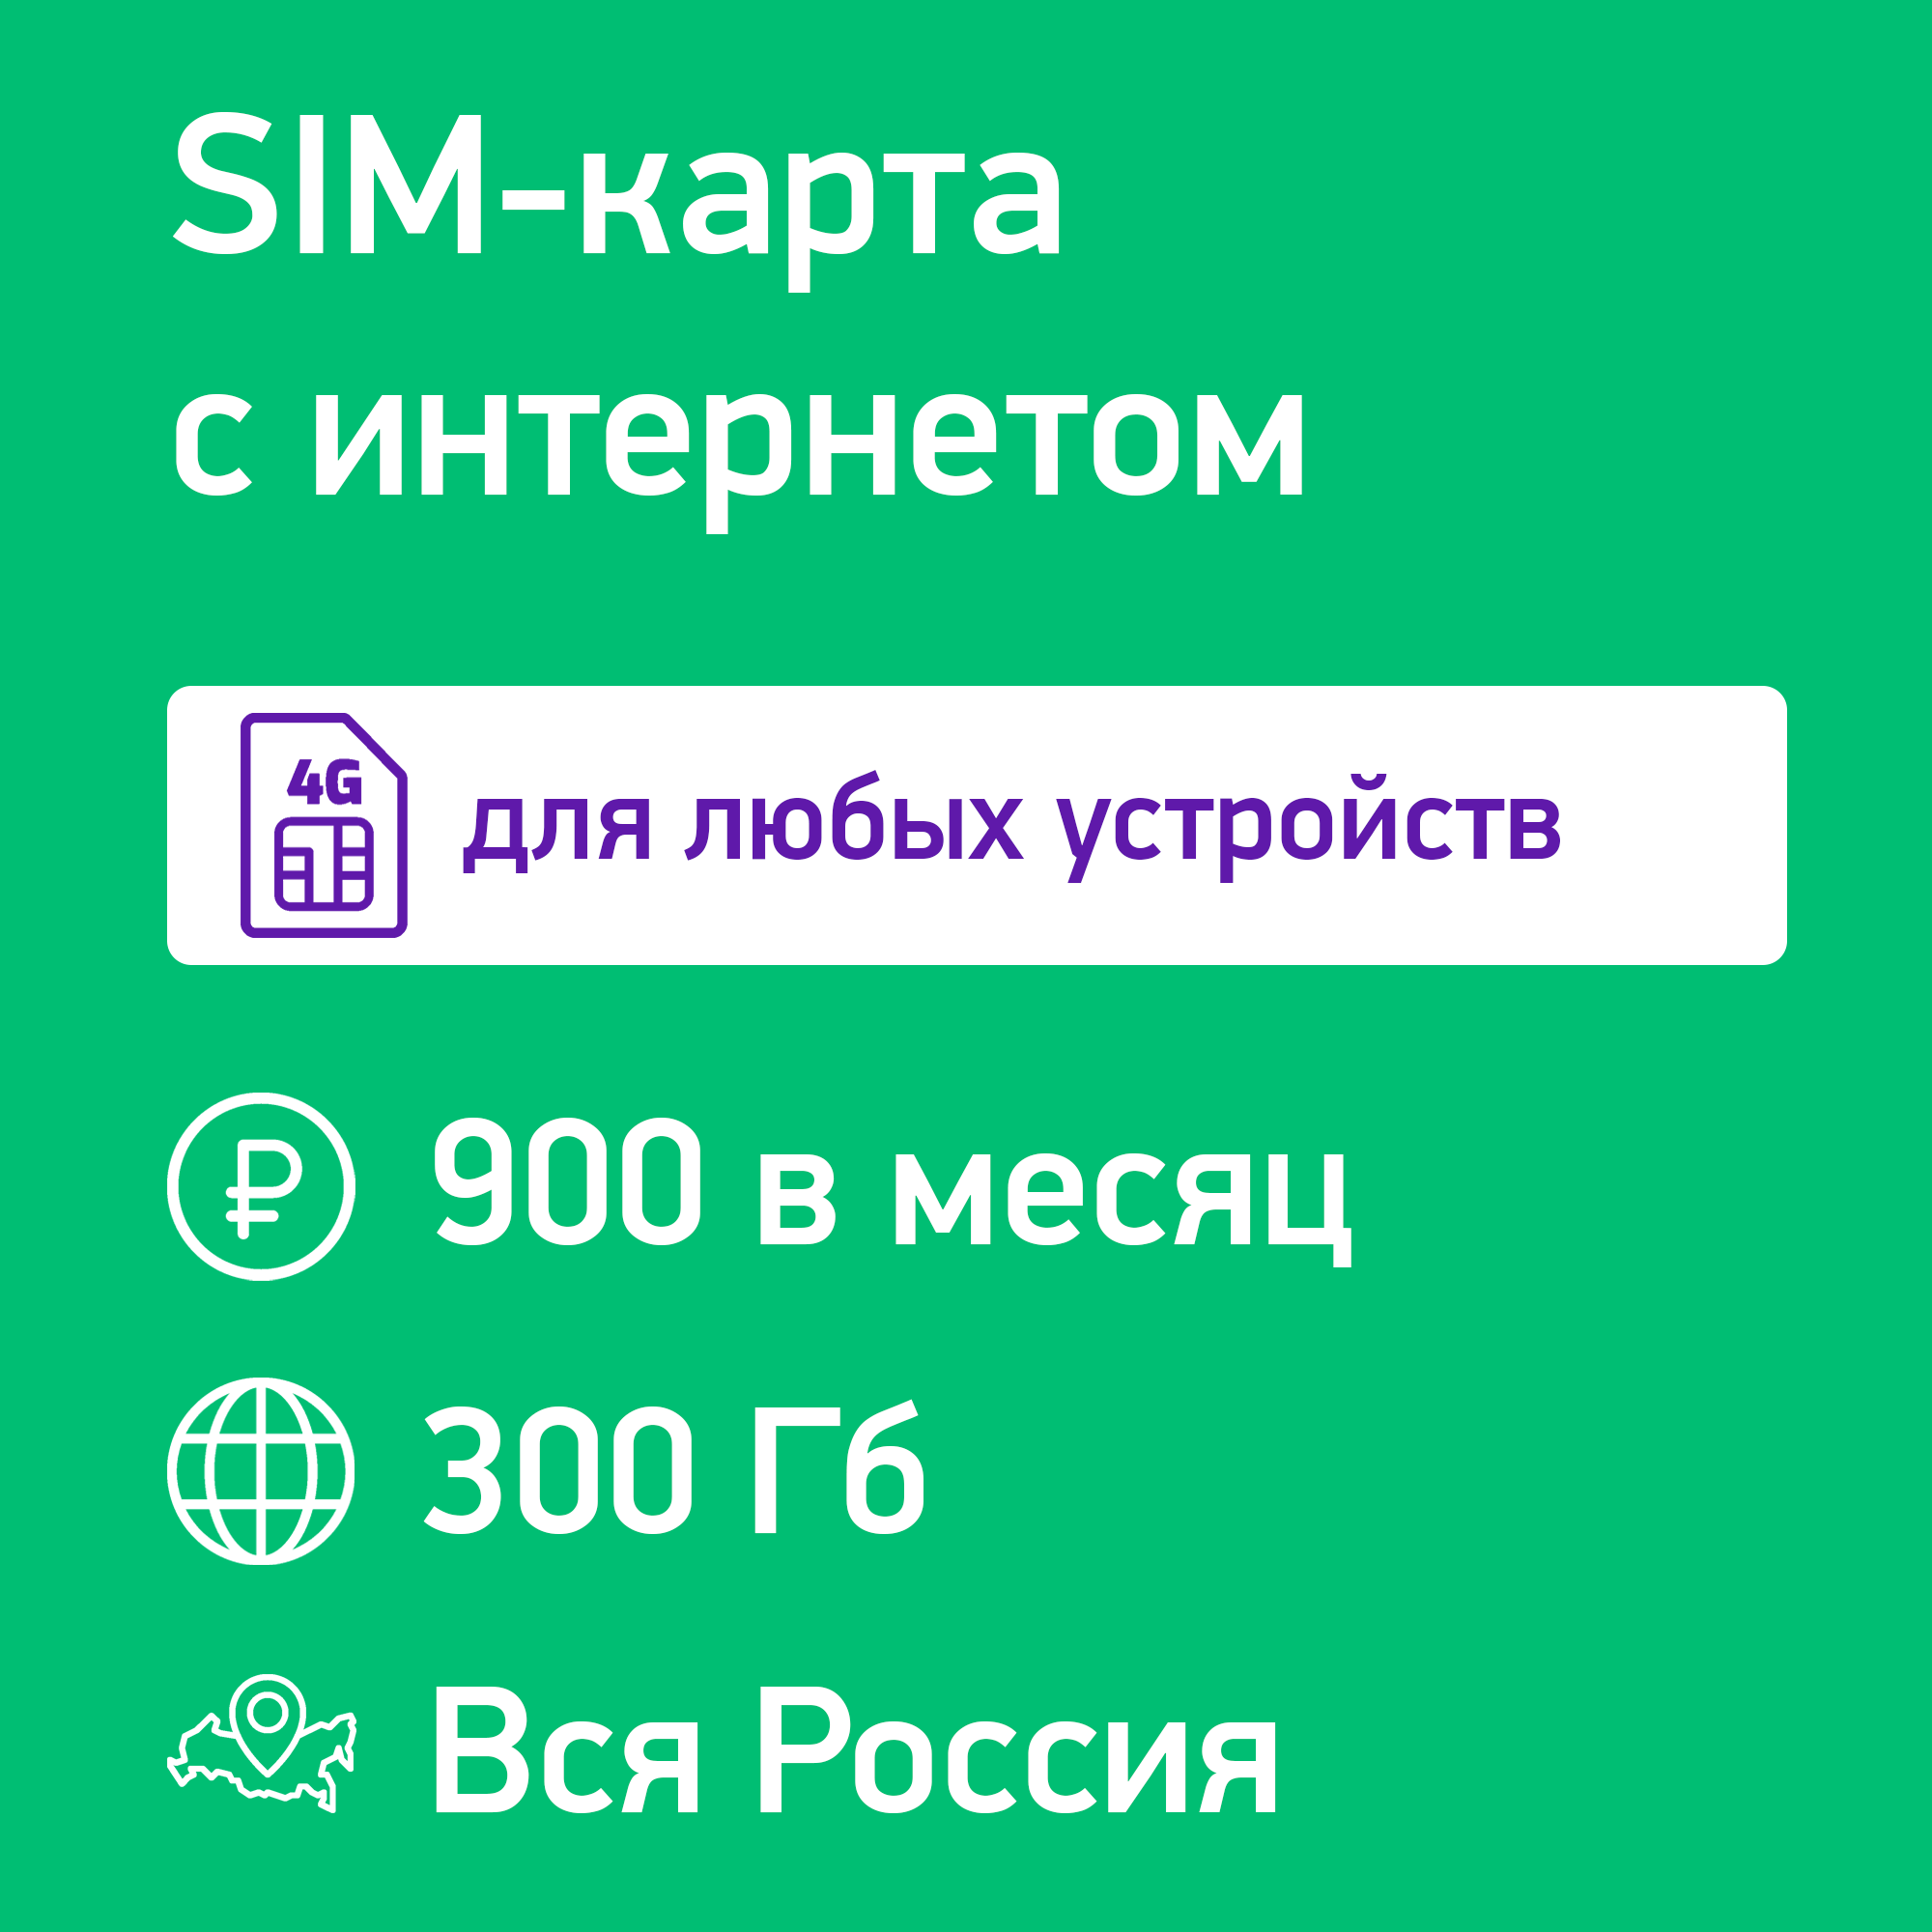 SIM-карта для модема и роутера 300 Гб за 900 руб/мес. в сети Мегафон